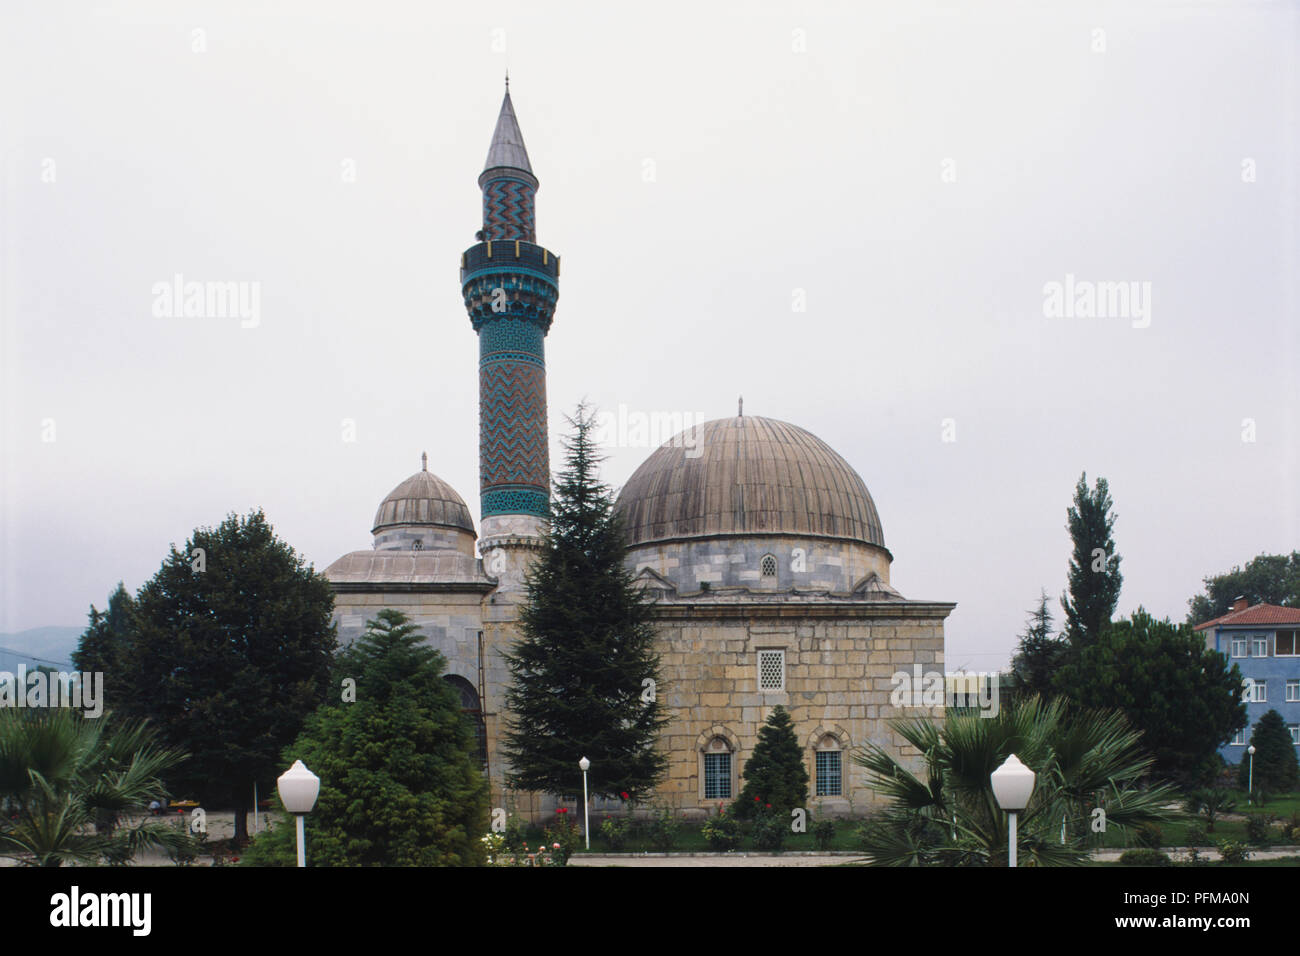 La Turquie, Iznik, 14e siècle la mosquée Yesil Cami, également connu sous le nom de la Mosquée Verte après les carreaux verts ornant son minaret à motifs, d'arbres et d'arbustes autour. Banque D'Images